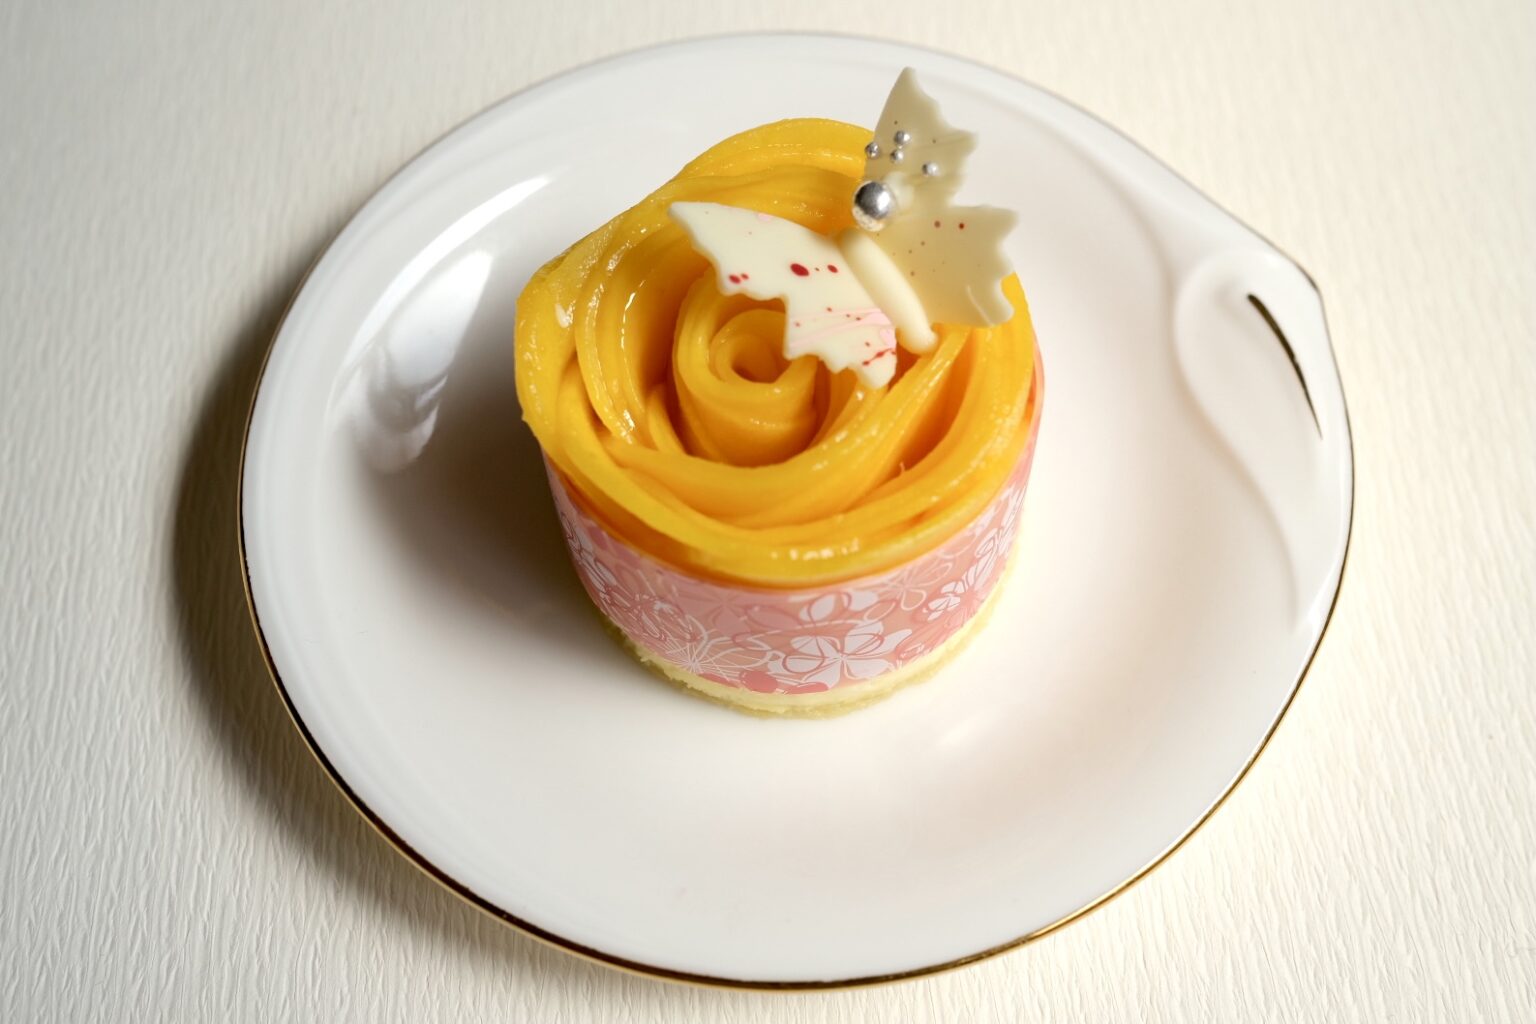 「マンゴームースケーキ」750円（直径6cm）。